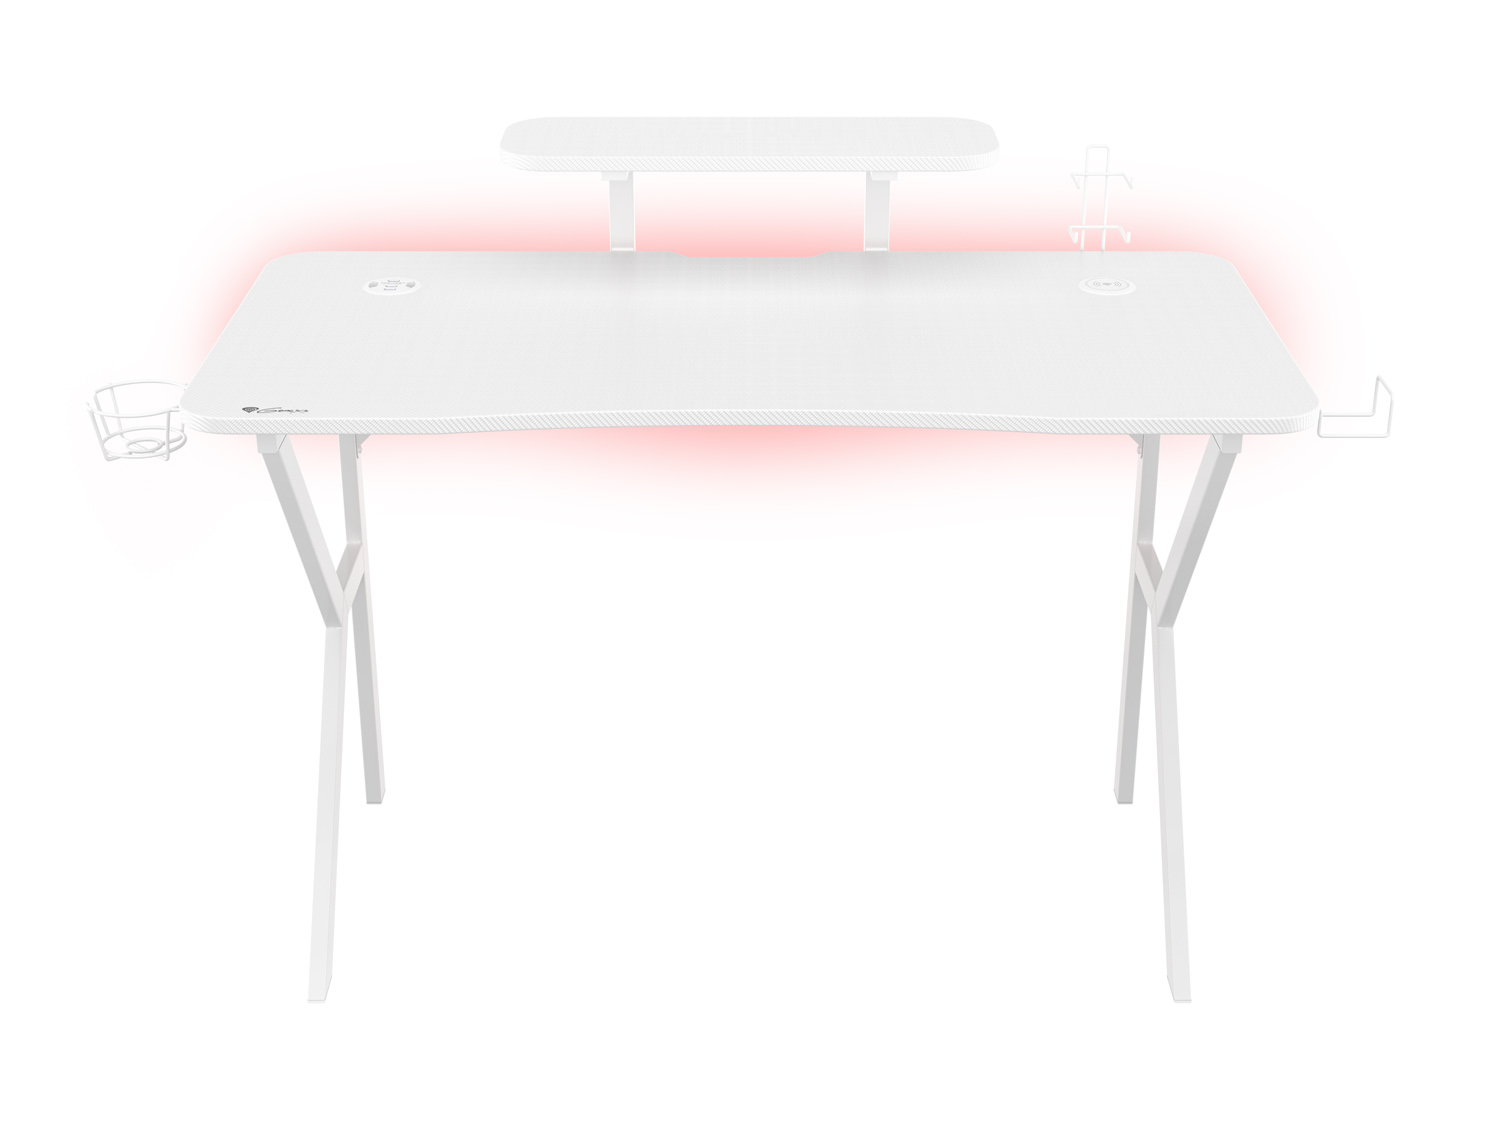 Obrázek Genesis herní stůl Holm 320, RGB podsvícení, bílý, 120x60cm, 3xUSB 3.0, bezdrátová nabíječka